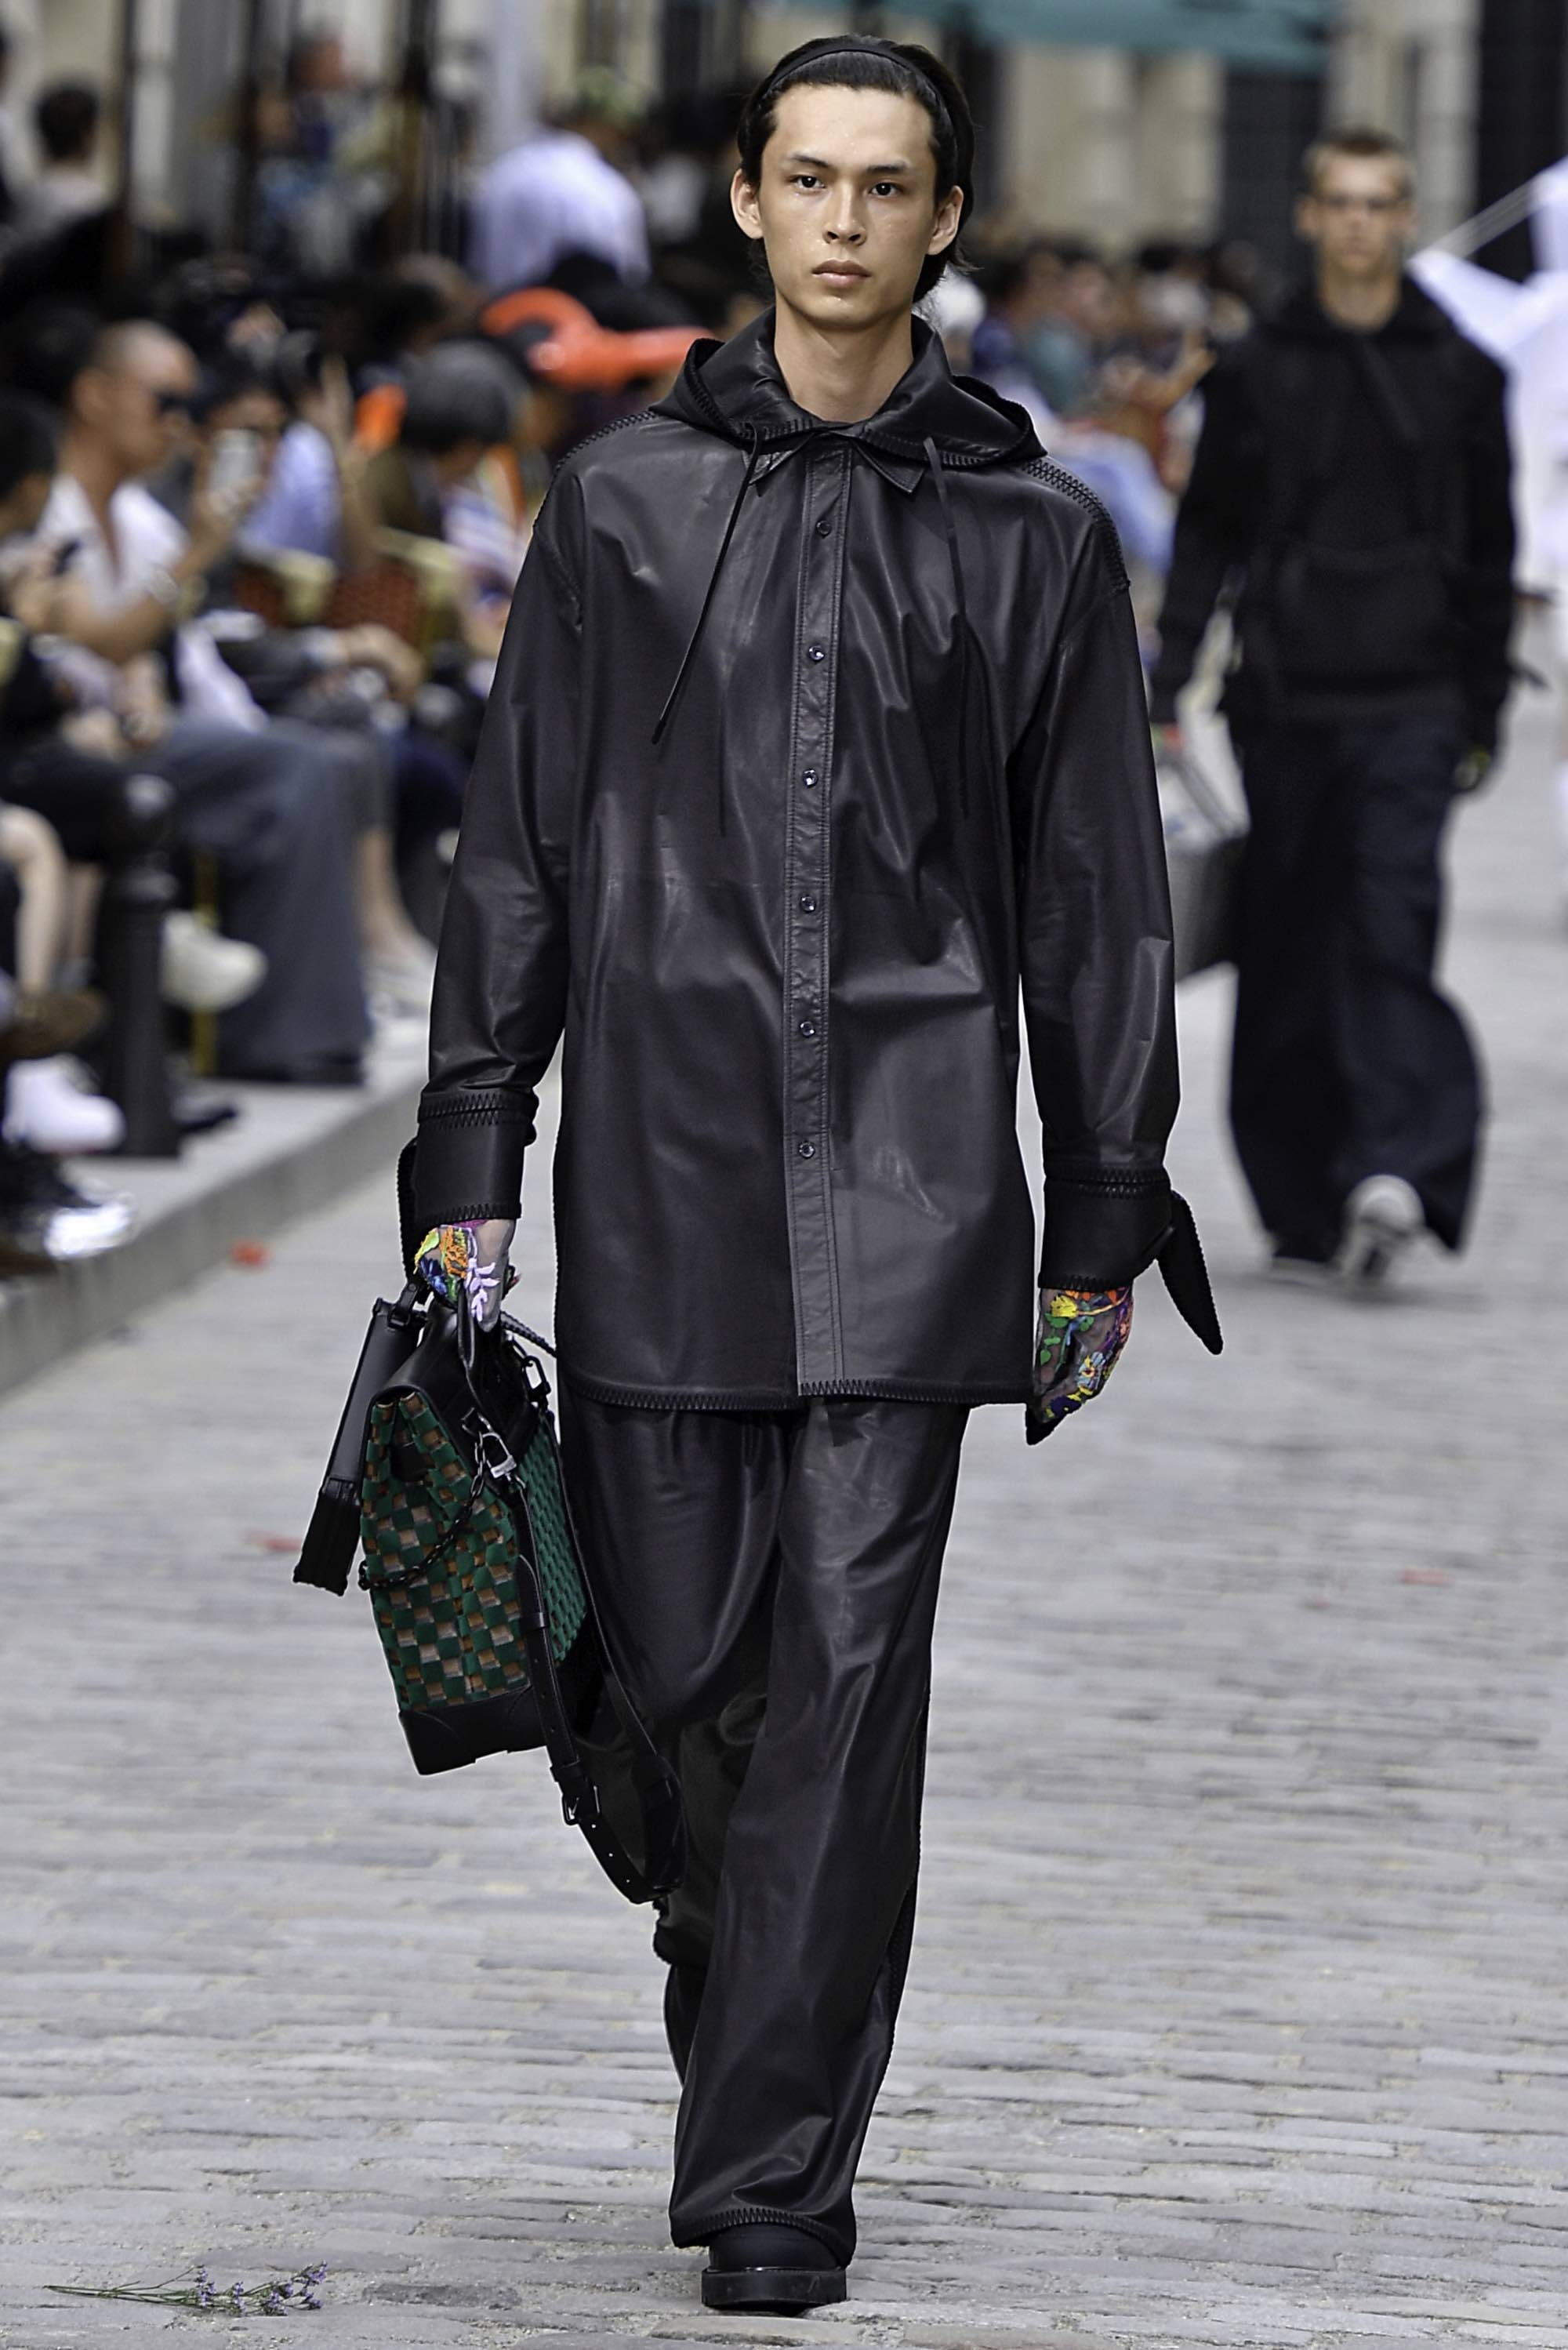 Louis Vuitton SS20 menswear #50 - Tagwalk: The Fashion Search Engine